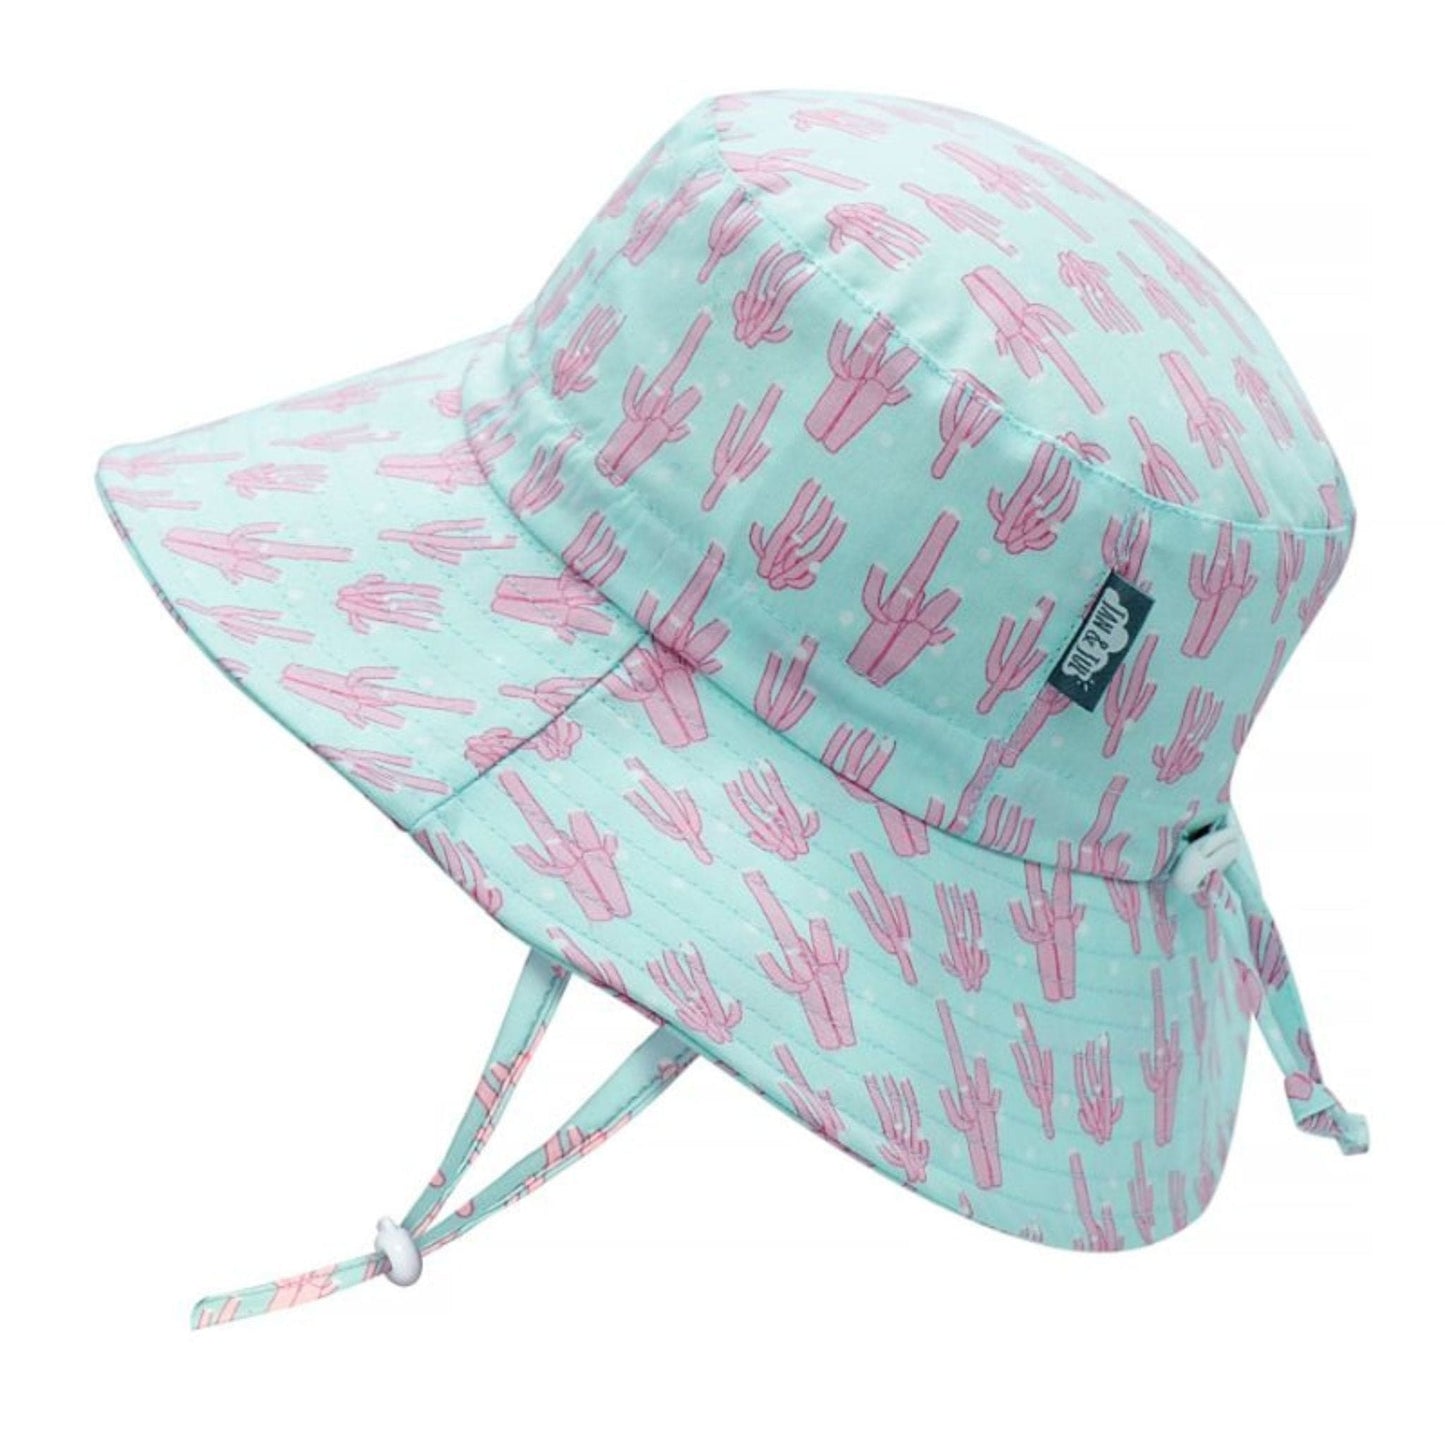 Jan & Jul Kids Gro-With-Me® Cotton Bucket UPF 50+ Sun Hats